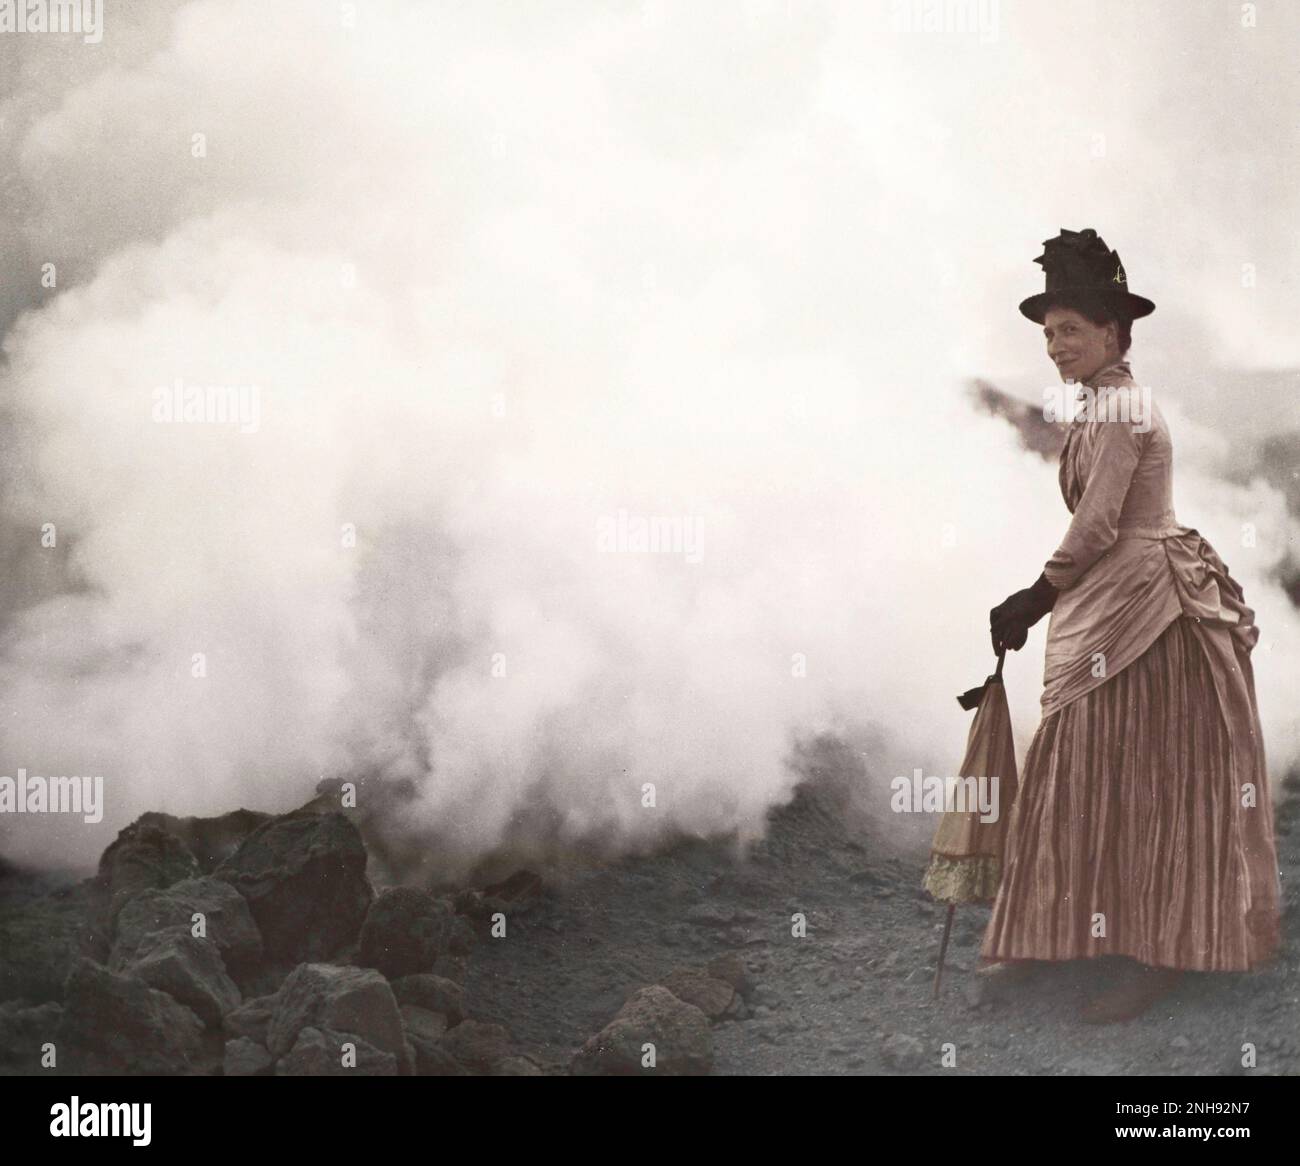 Frau mit Sonnenschirm am aktiven Kraterrand, Vulkan, Äolische Inseln, Italien, ca. 1880er. Glaslaterne von Tempest Anderson (1846-1913). Gefärbt. Stockfoto